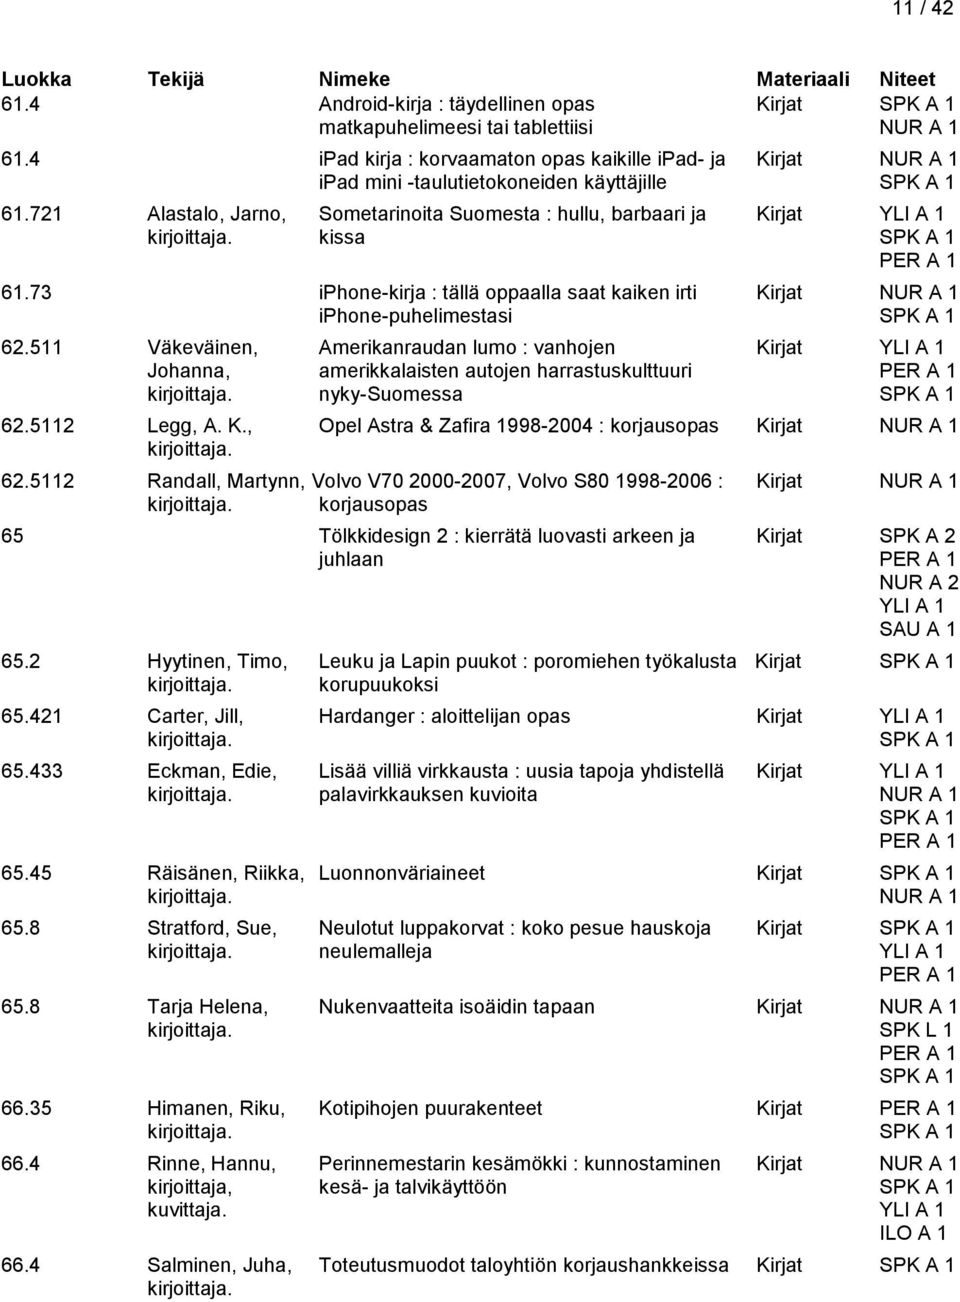 511 Väkeväinen, Amerikanraudan lumo : vanhojen Kirjat Johanna, amerikkalaisten autojen harrastuskulttuuri nyky-suomessa 62.5112 Legg, A. K., Opel Astra & Zafira 1998-2004 : korjausopas Kirjat 62.